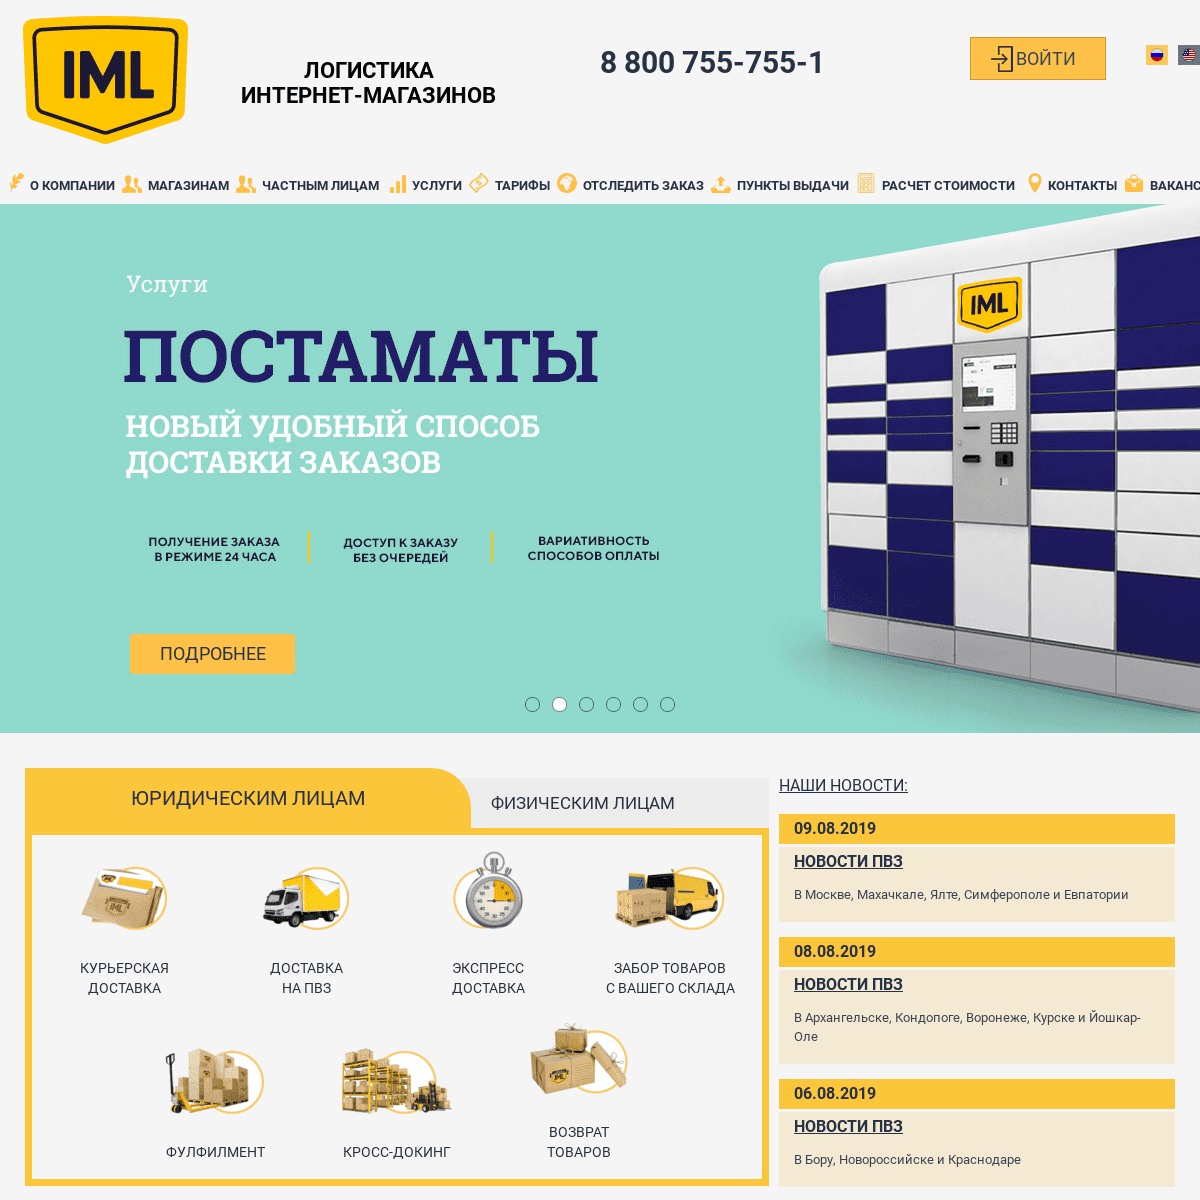 A complete backup of iml.ru